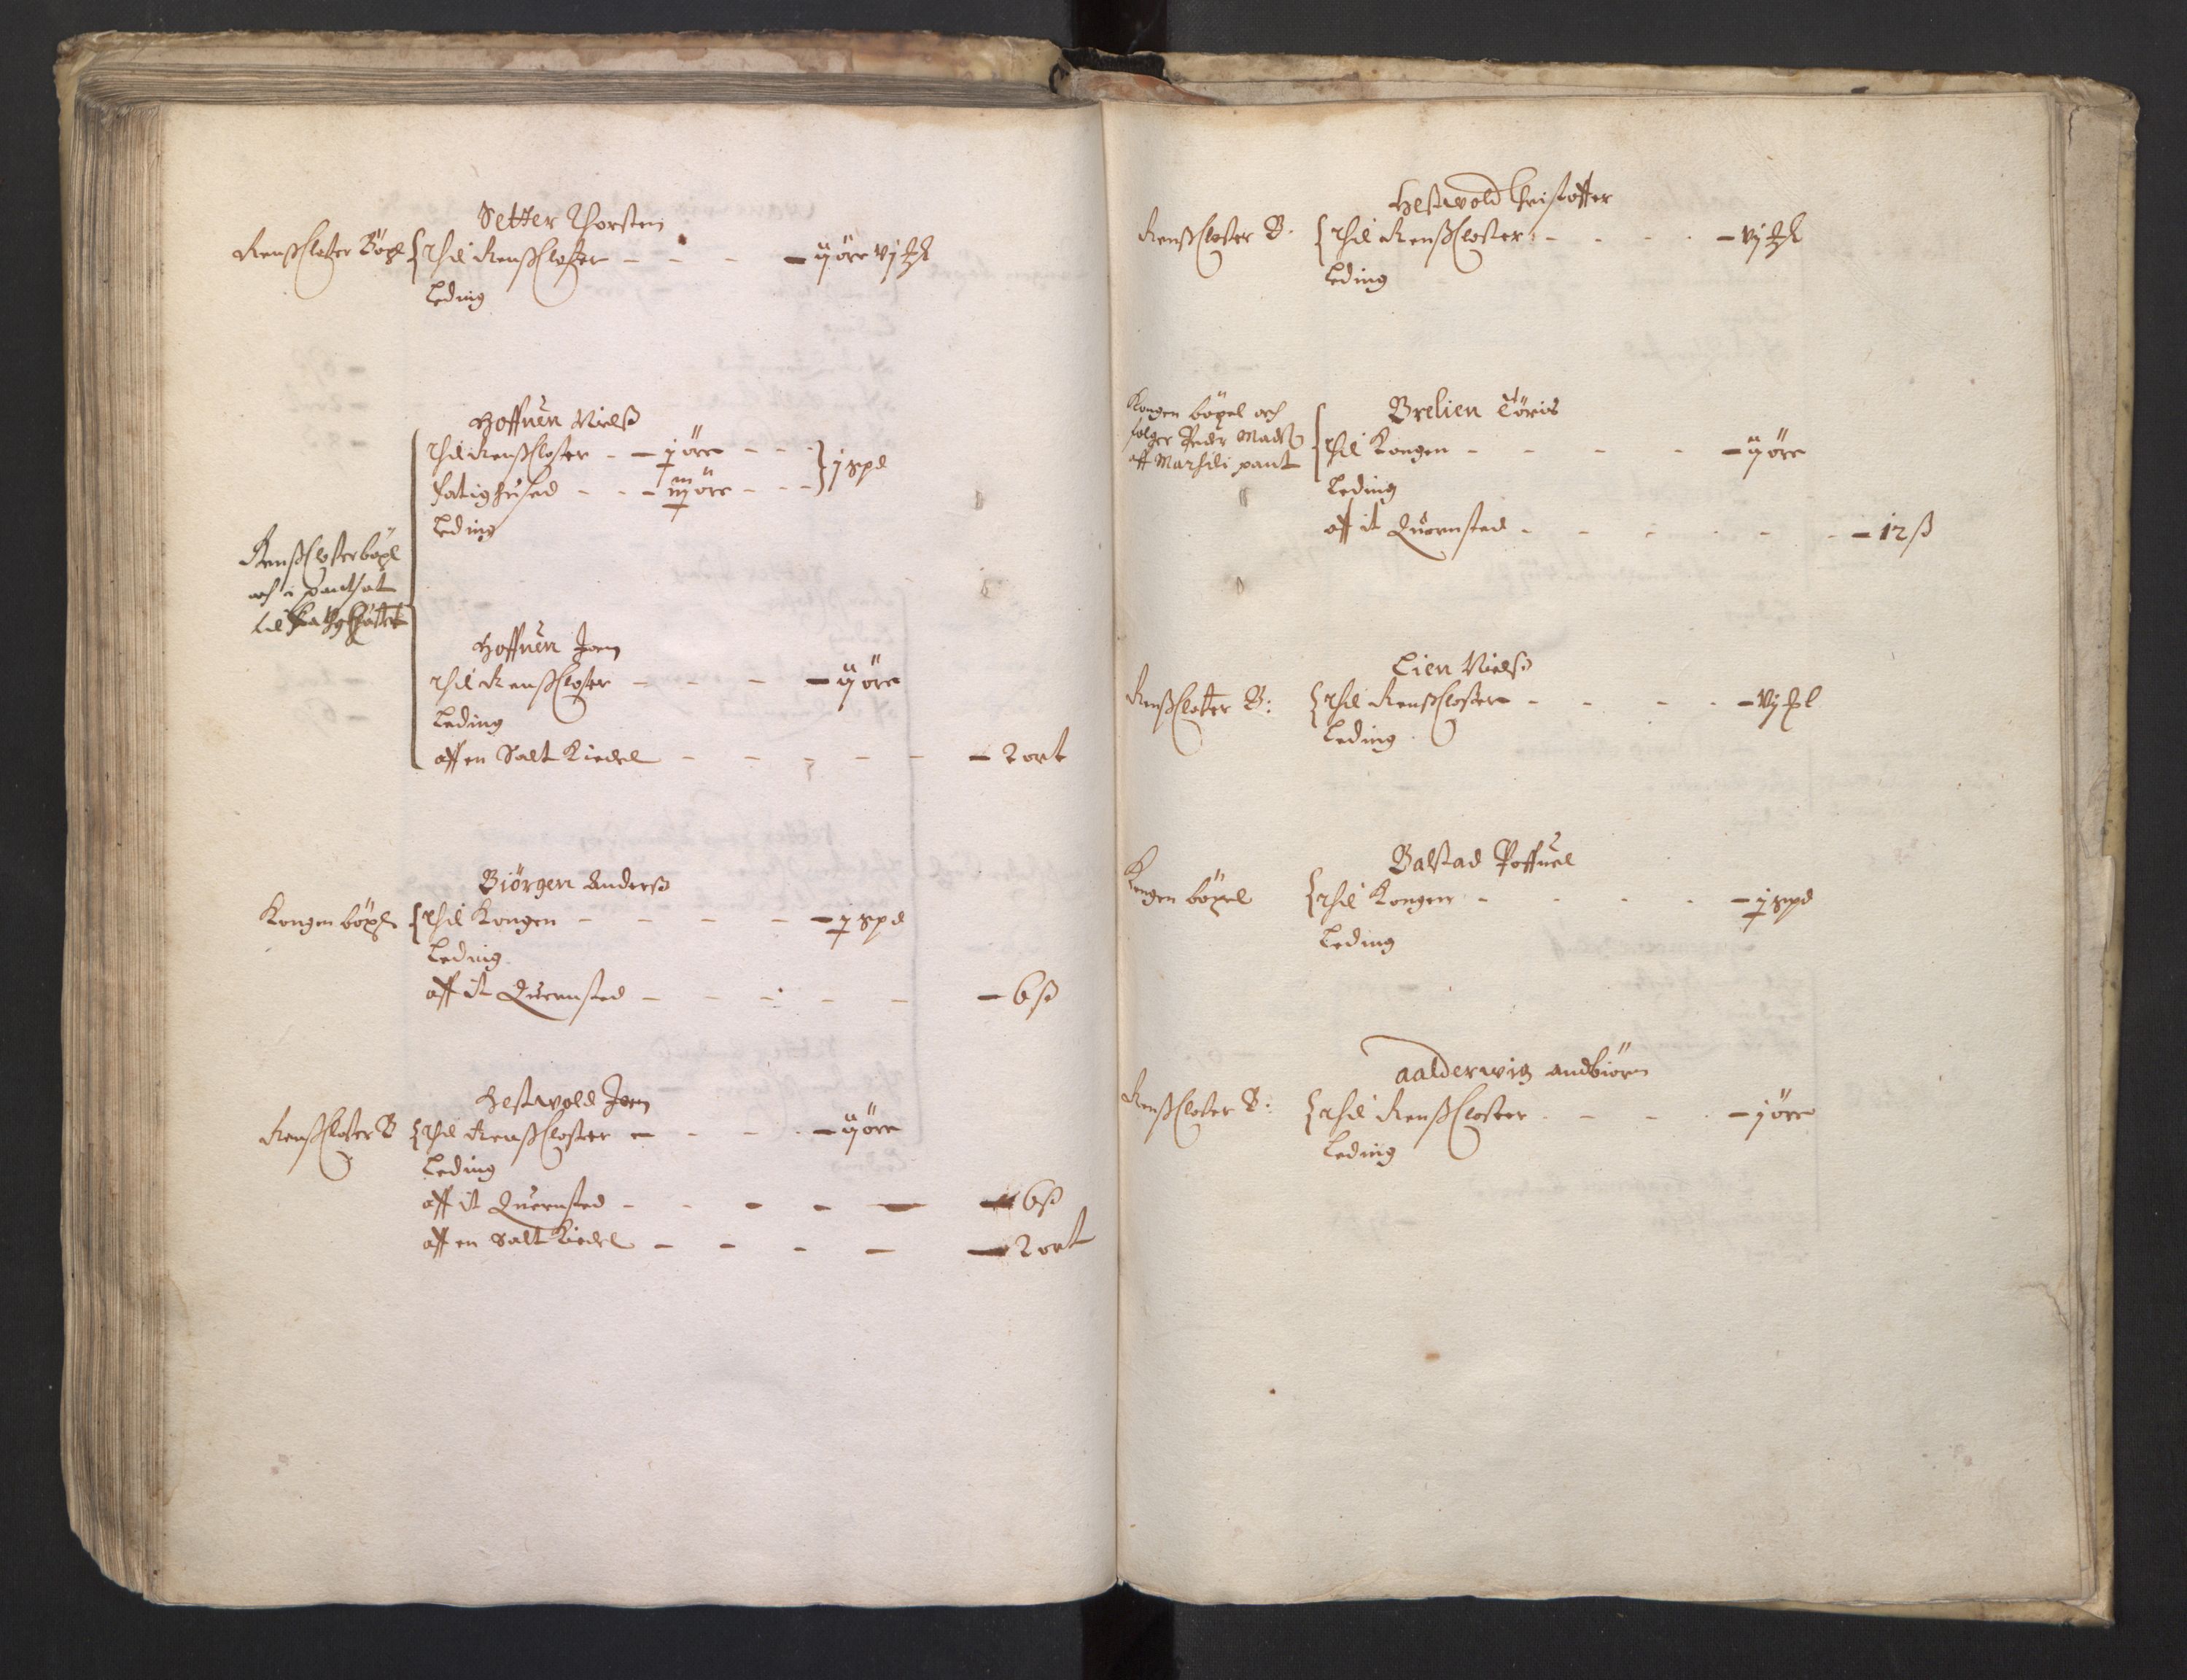 Rentekammeret inntil 1814, Realistisk ordnet avdeling, RA/EA-4070/L/L0029/0002: Trondheim lagdømme: / Alminnelig jordebok - Verdal, 1661